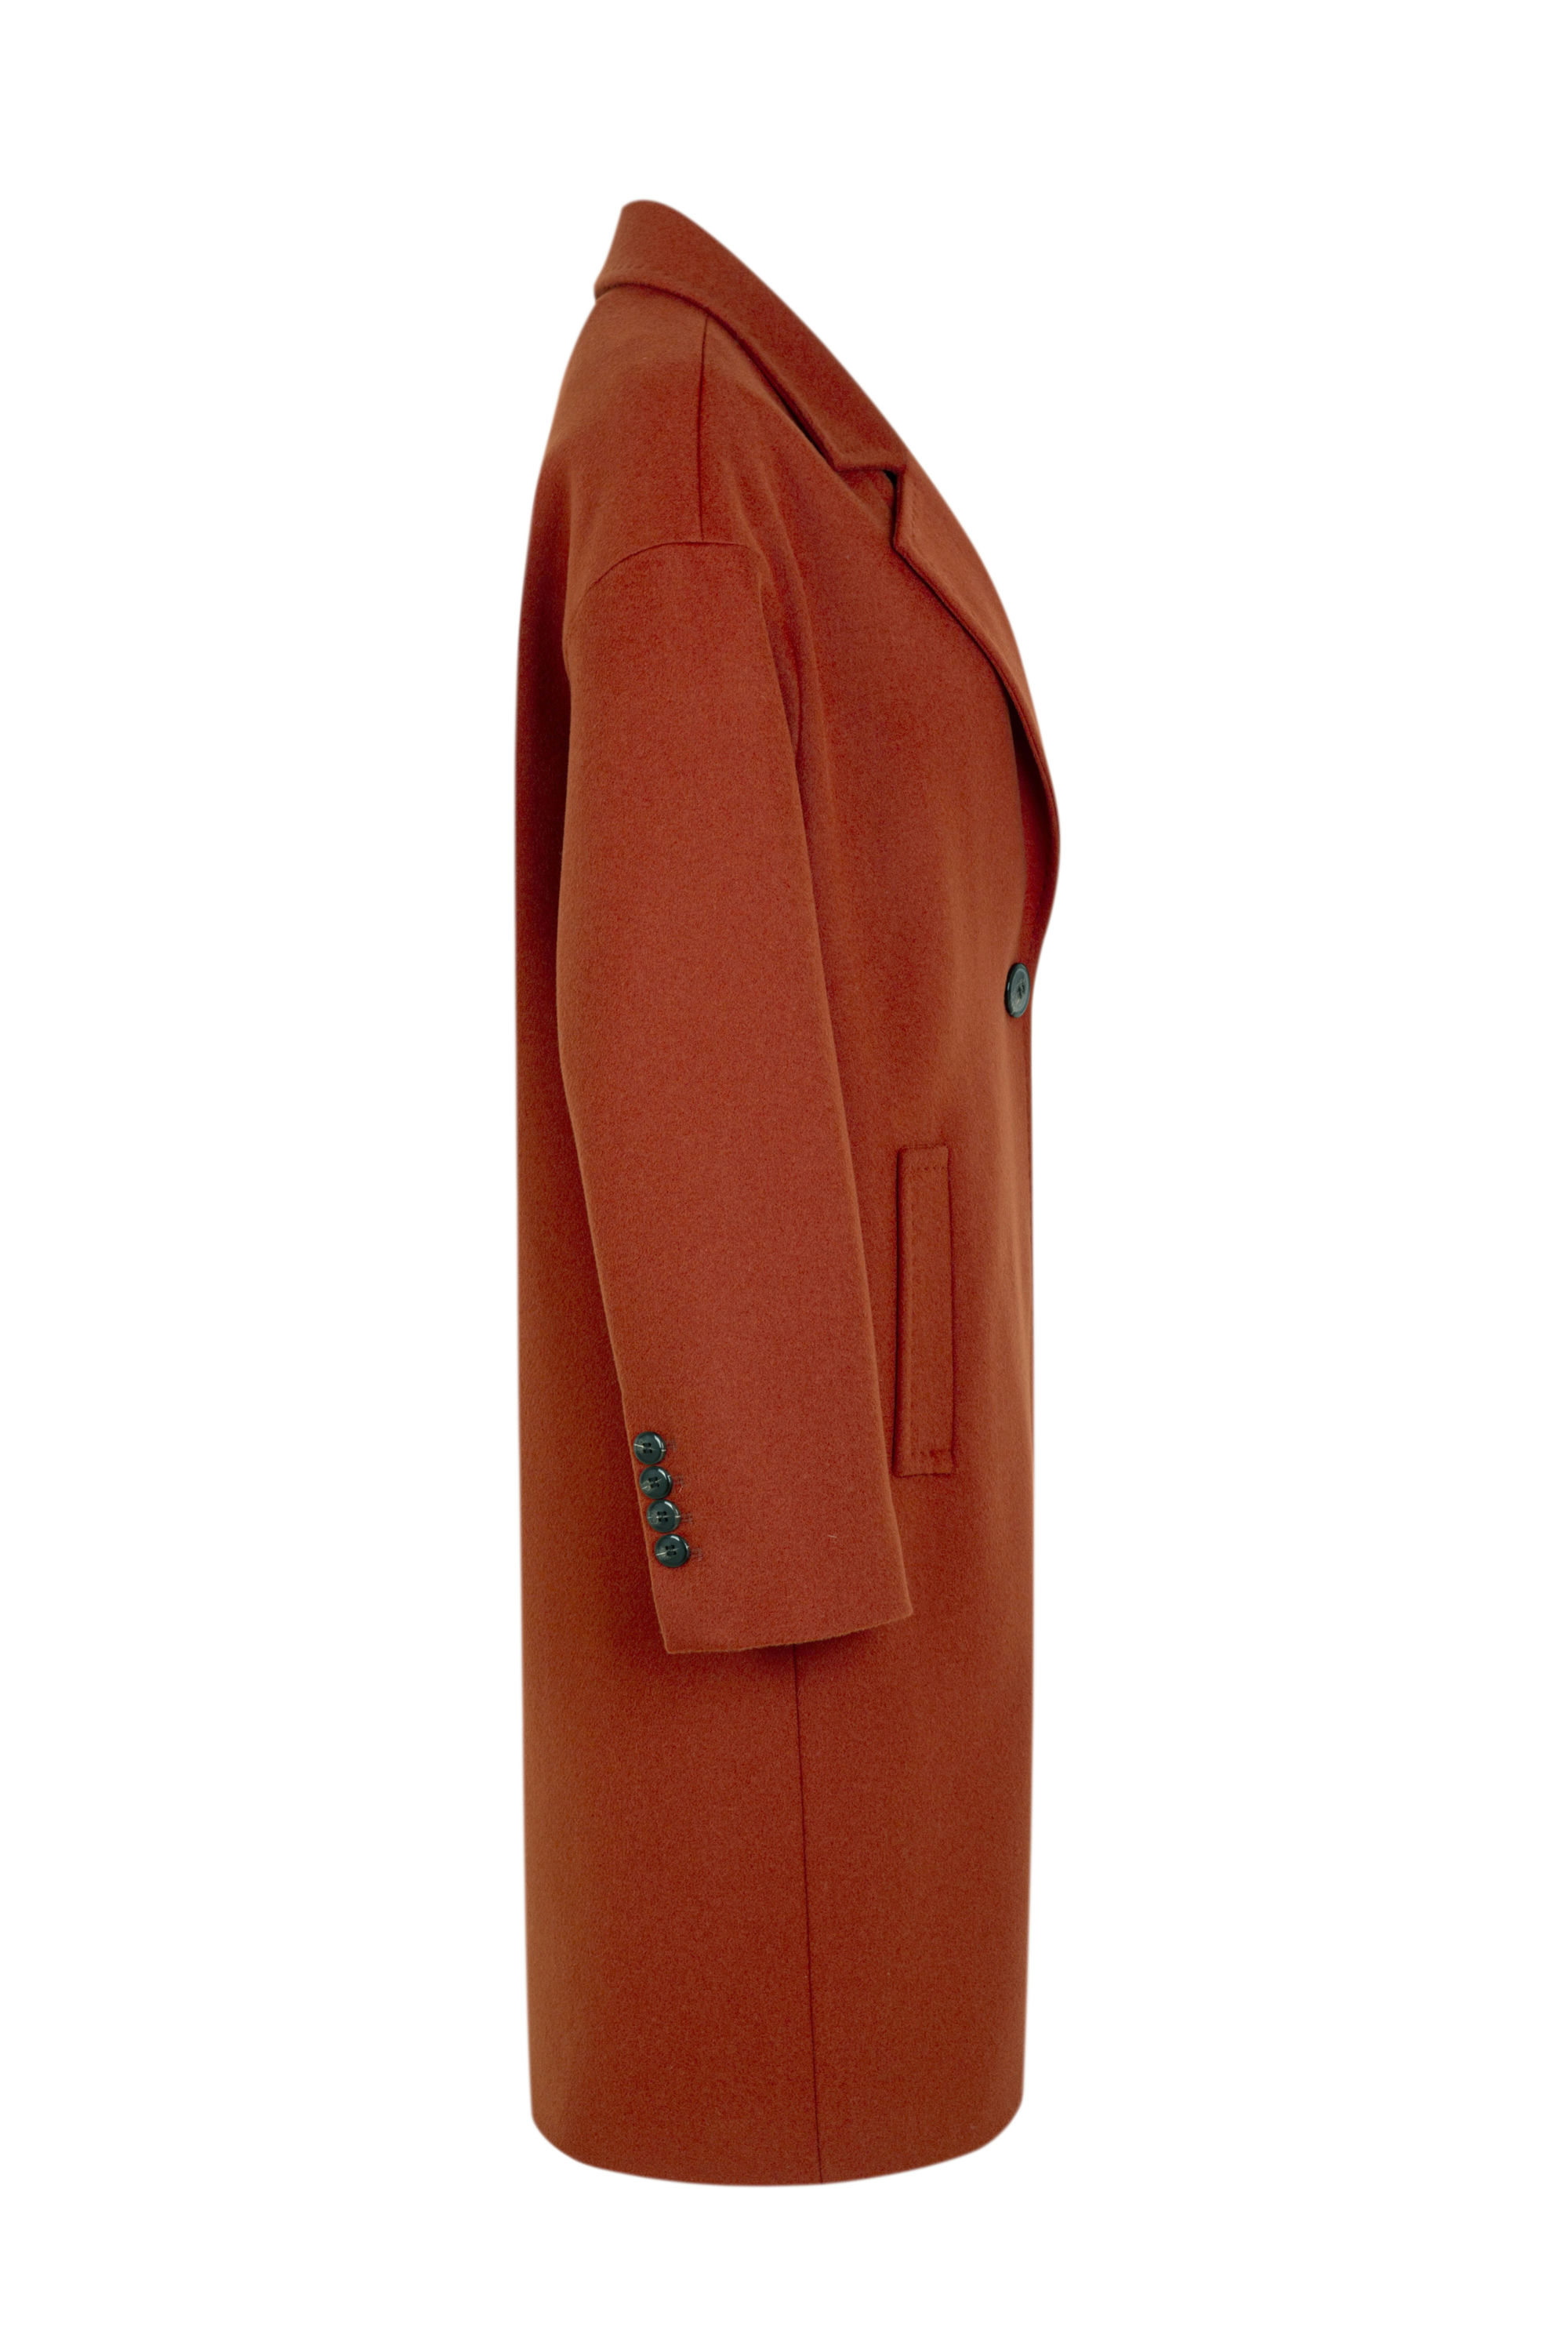 Пальто женское демисезонное 1-13022-1. Фото 2.